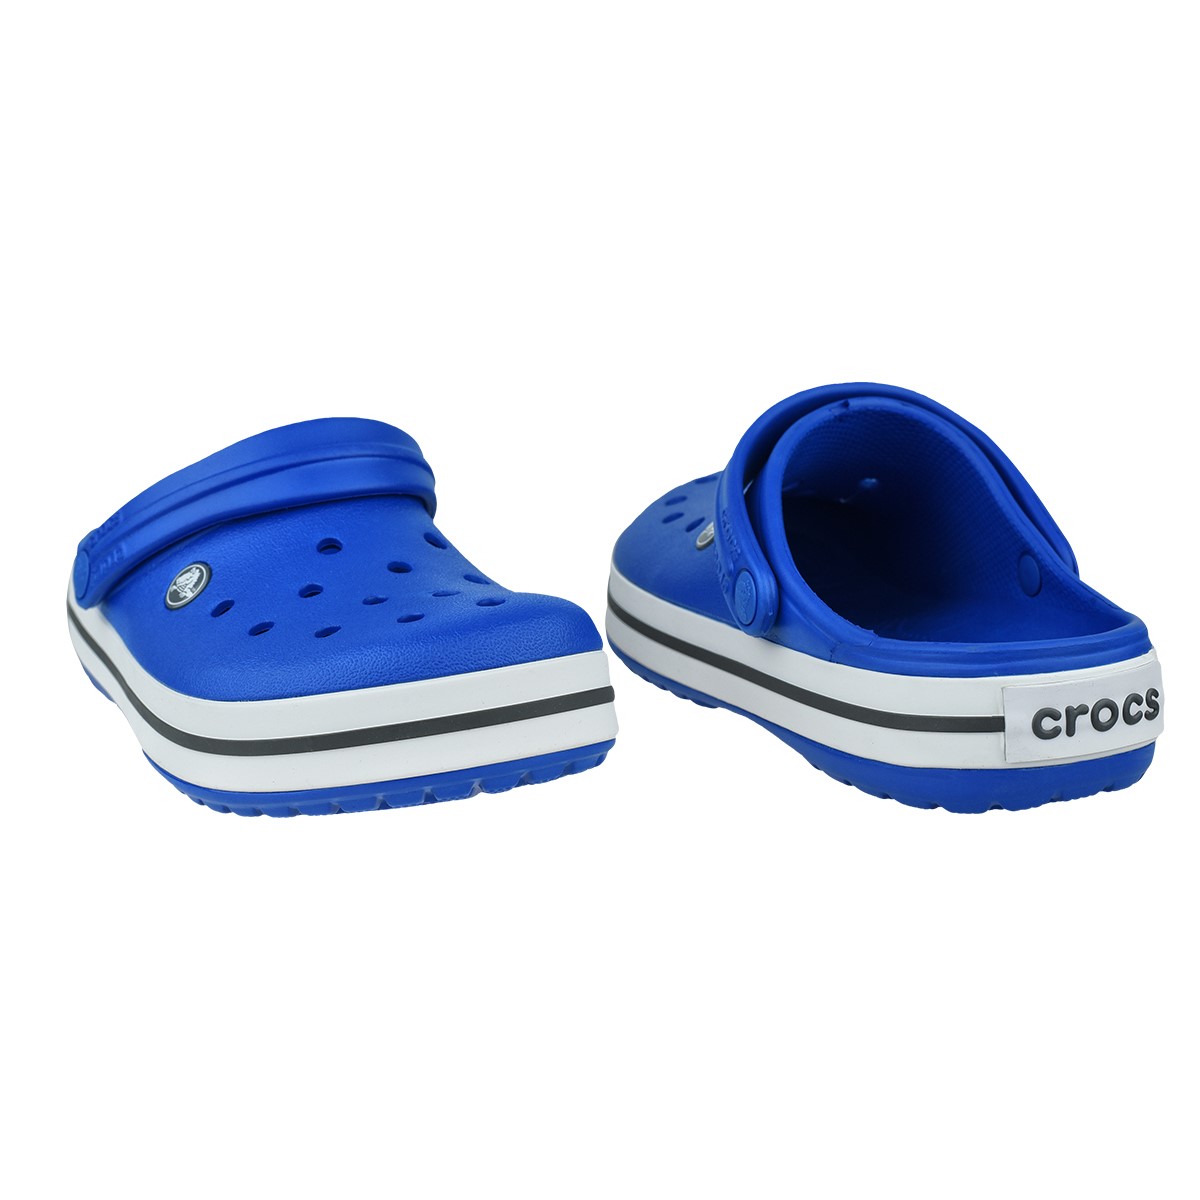 Crocs Unisex Sandalet 11016 Bright Cobalt/Charcoal